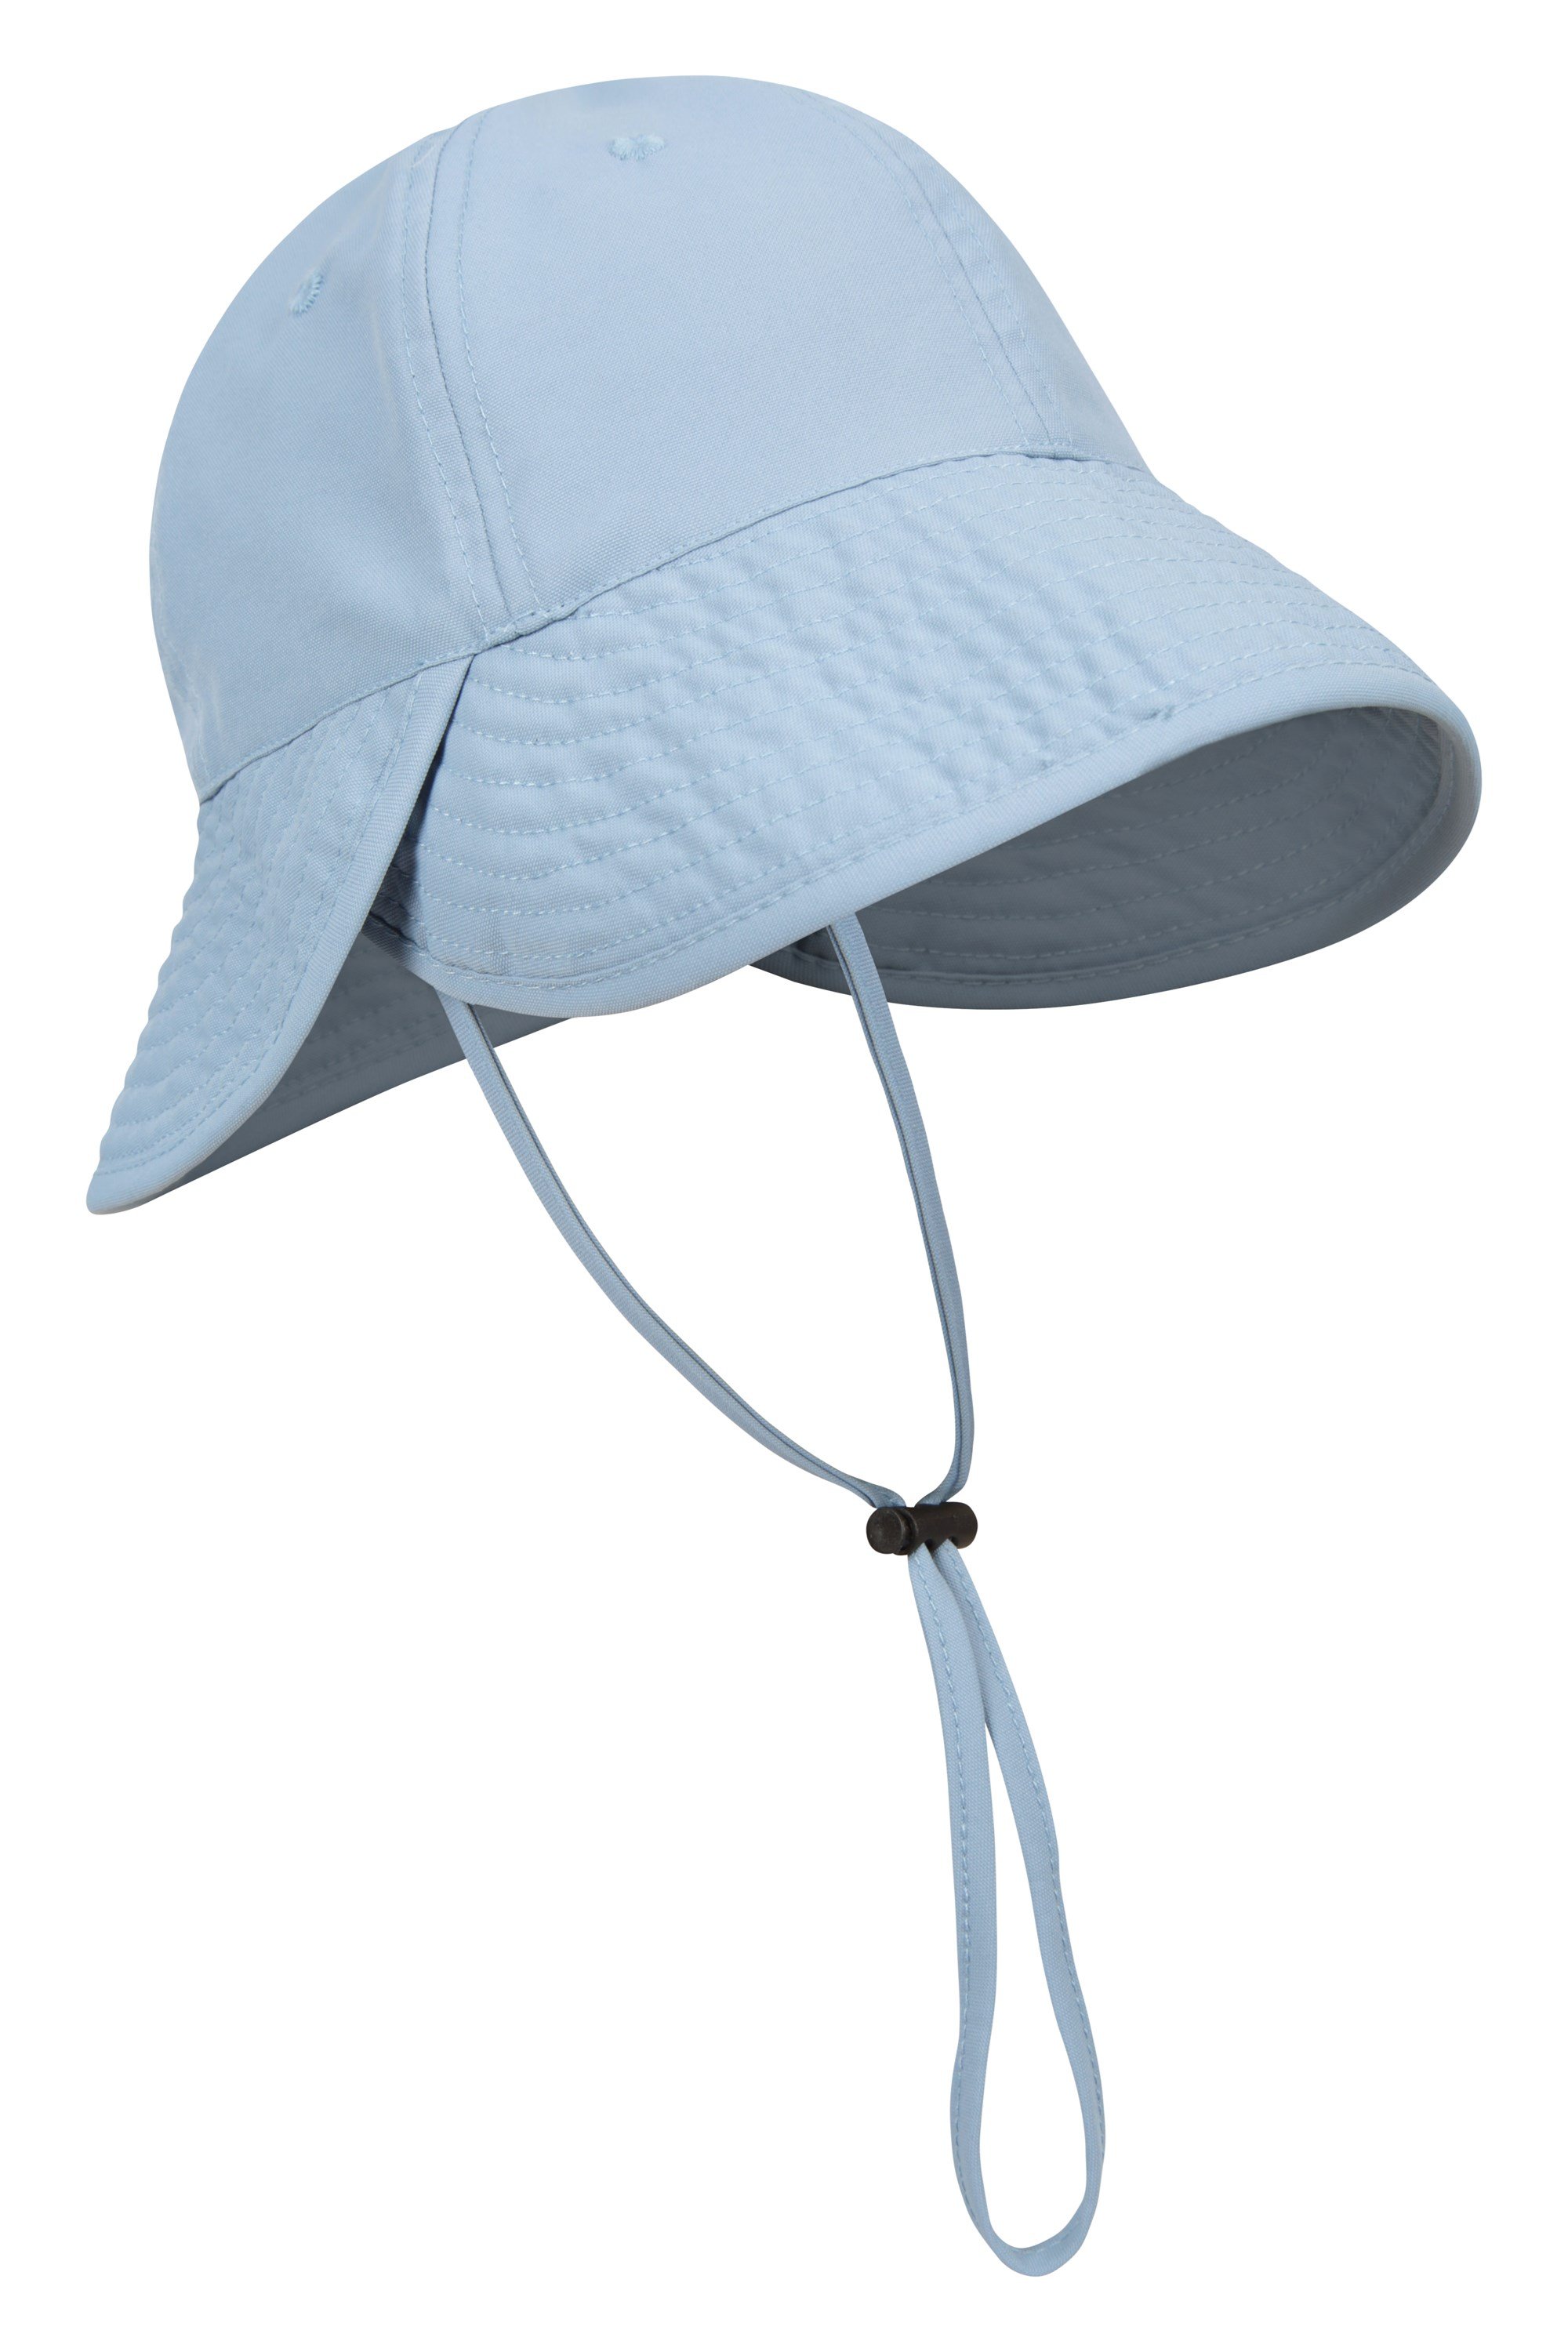 Albany damski kapelusz przeciwsłoneczny - Blue